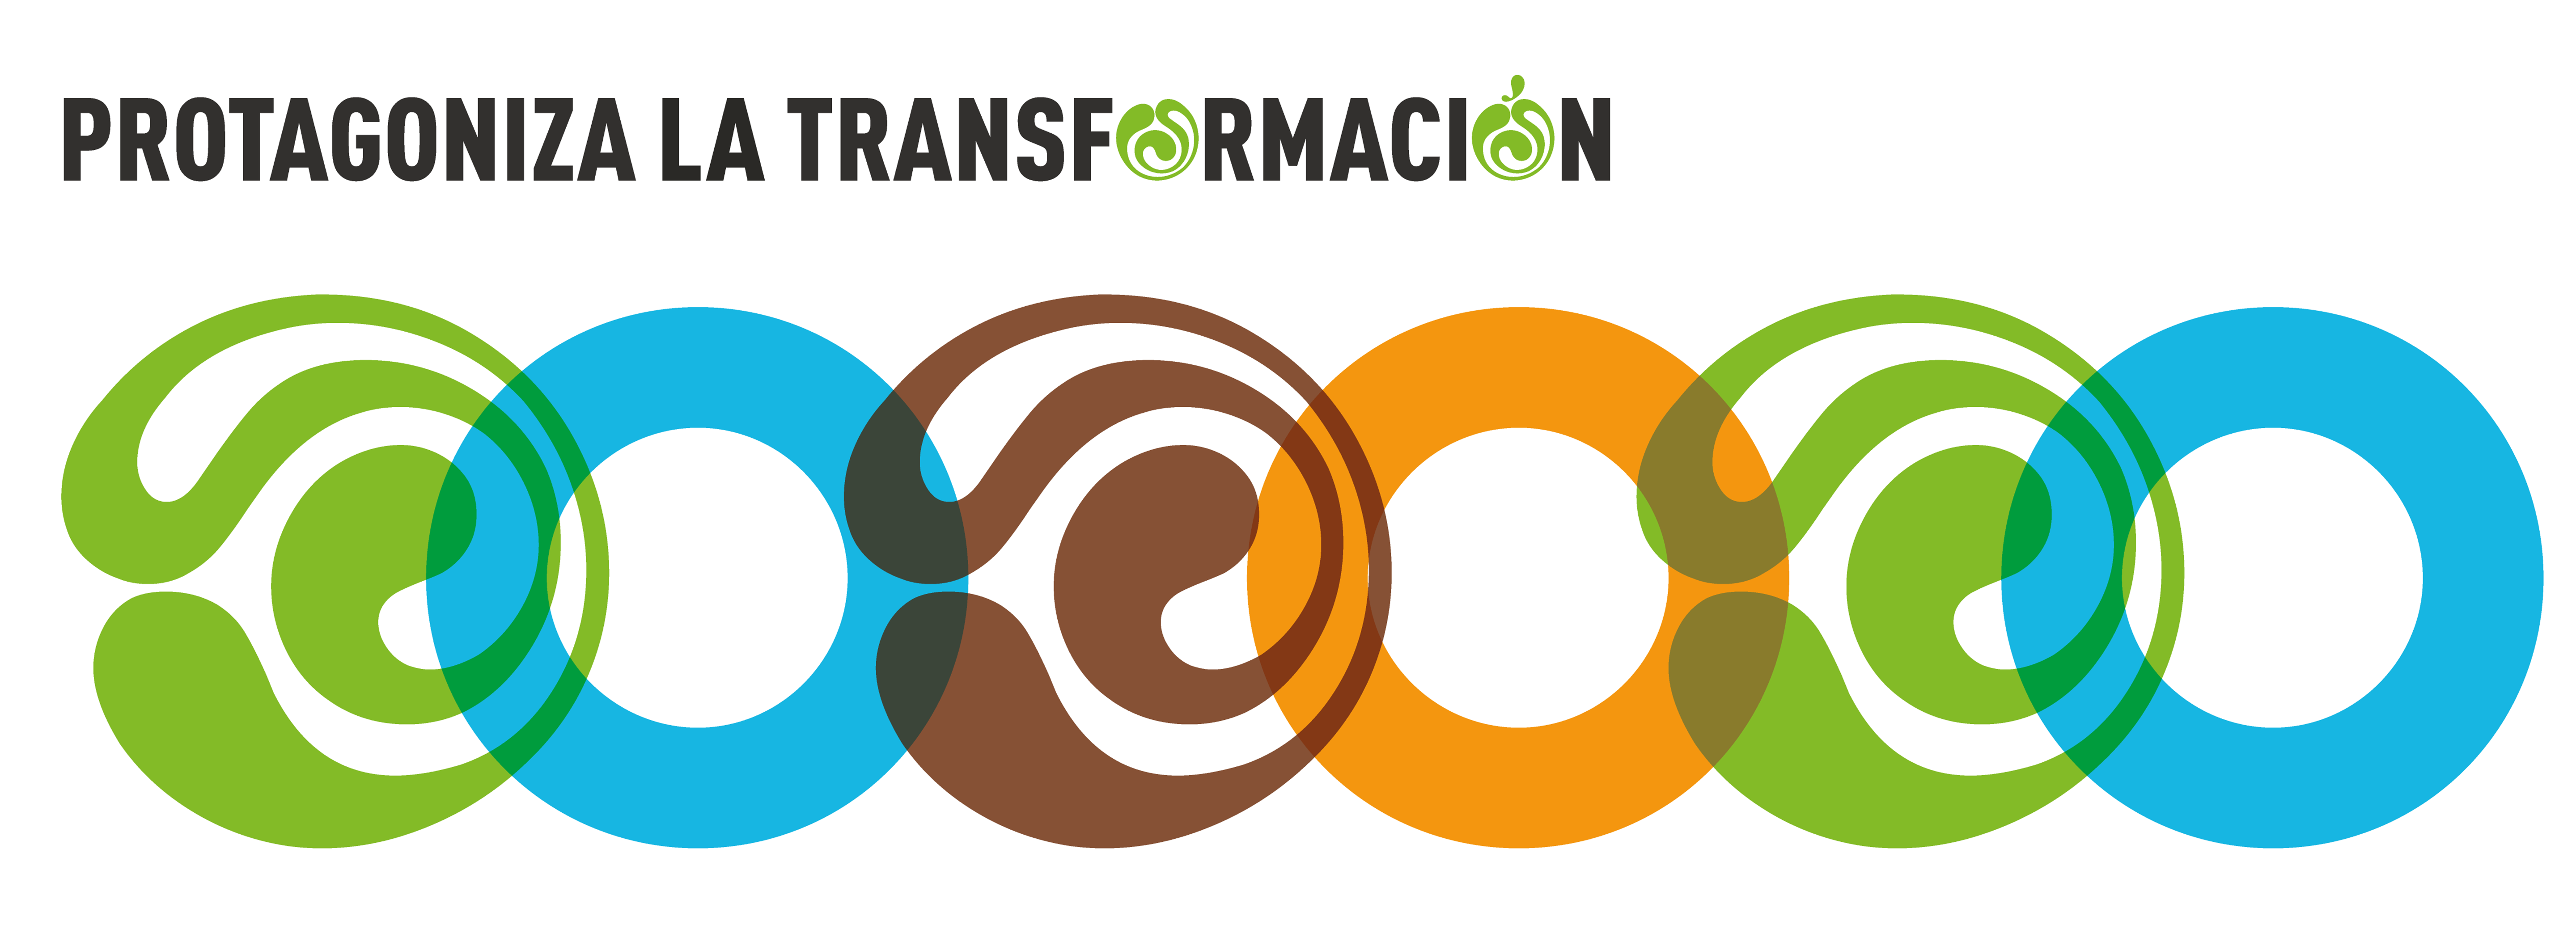 Protagoniza la transformación, lema de Conama 2022